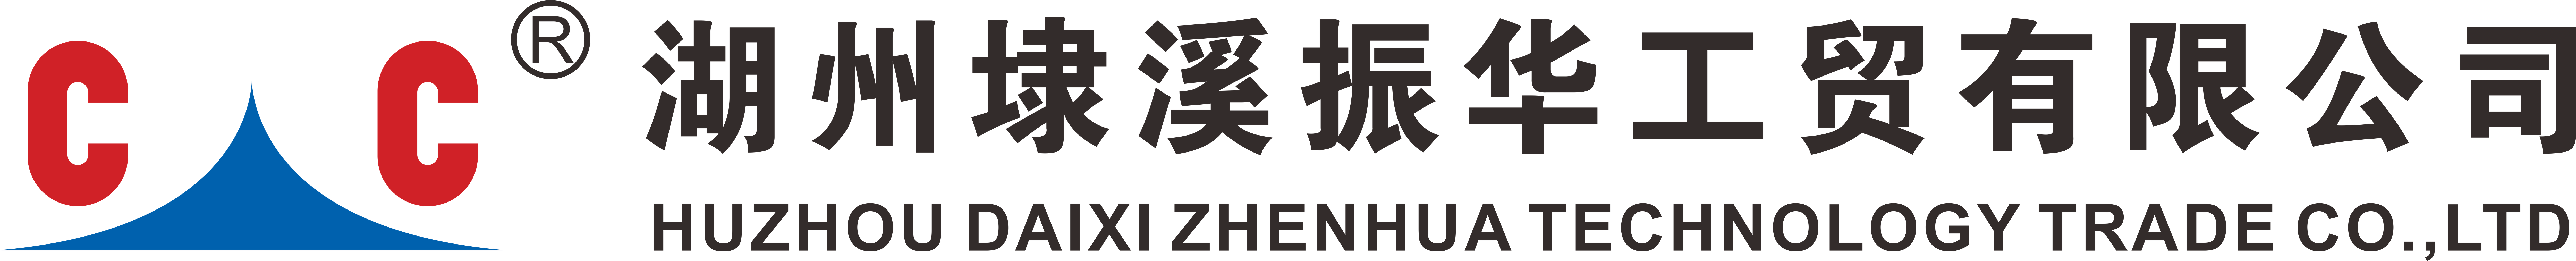 Huzhou Daixi Zhenhua Technology Trade co.,ltd